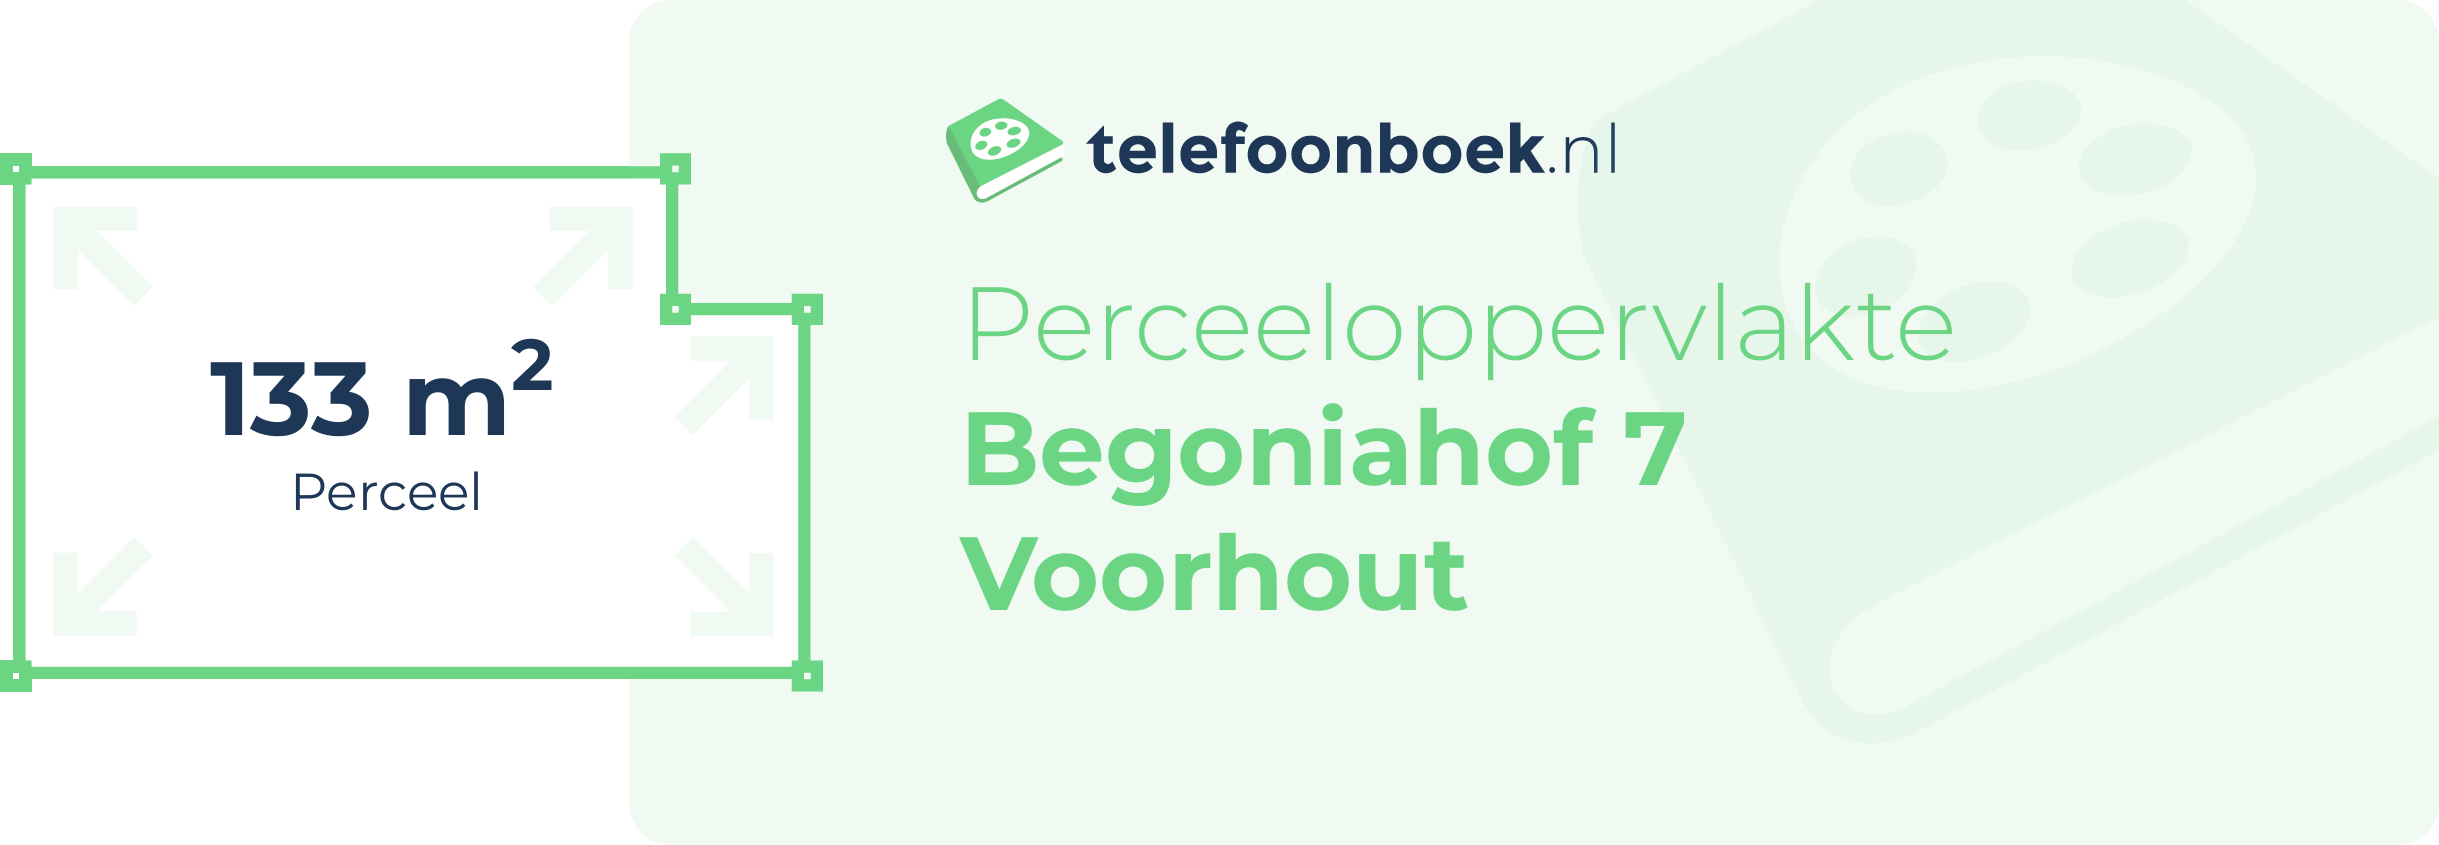 Perceeloppervlakte Begoniahof 7 Voorhout